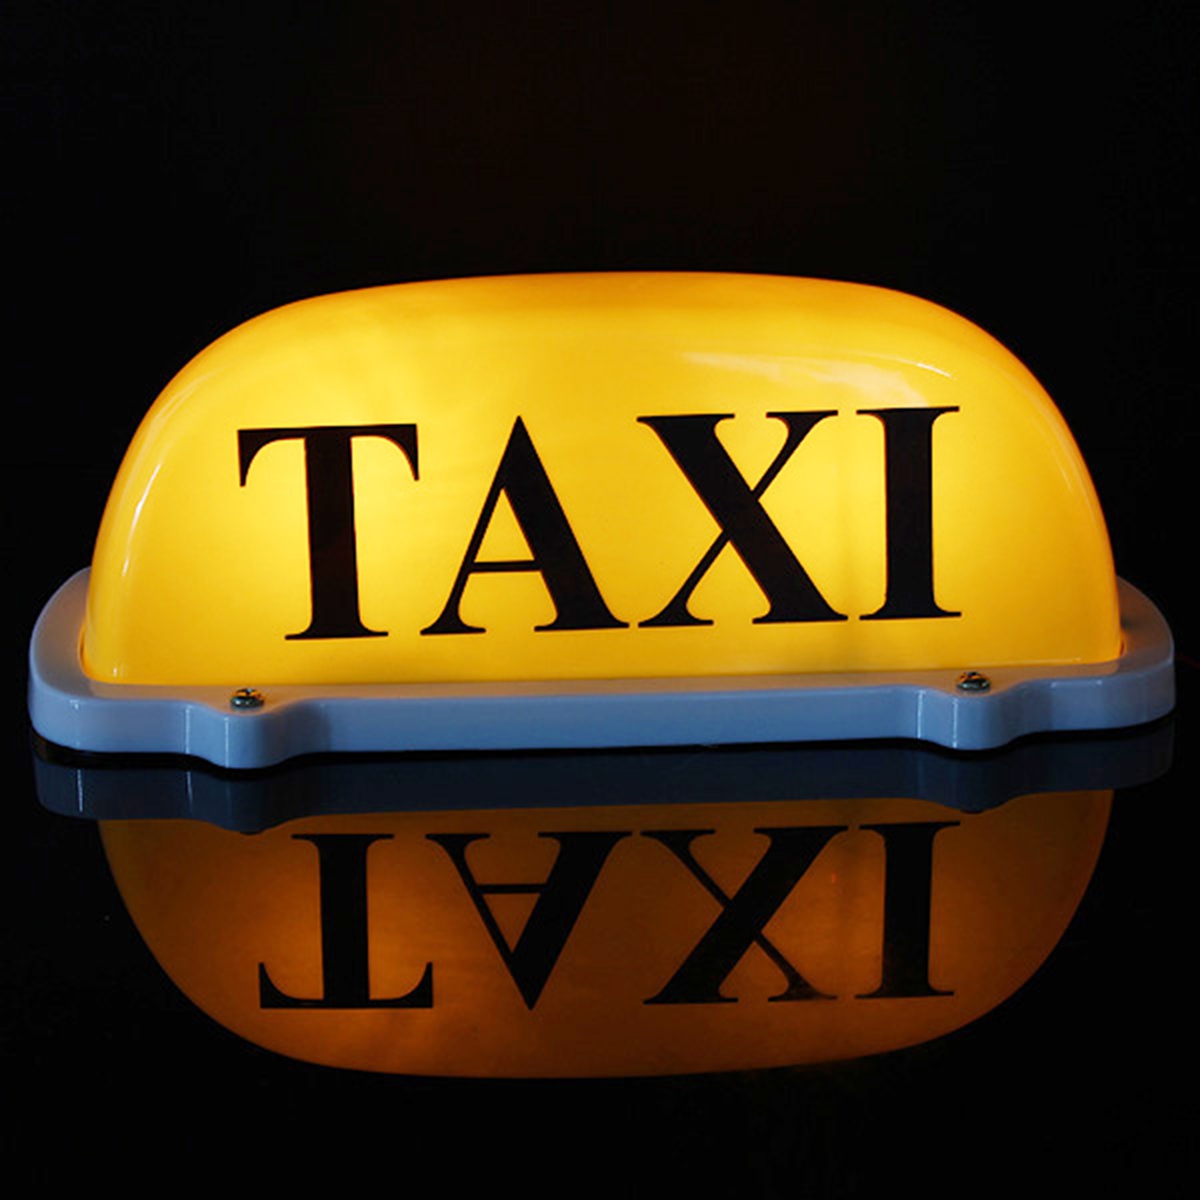 La cumbre del tejado del taxi del taxi de coches de dc12v firma la lámpara ligera talla grande amarilla magnética